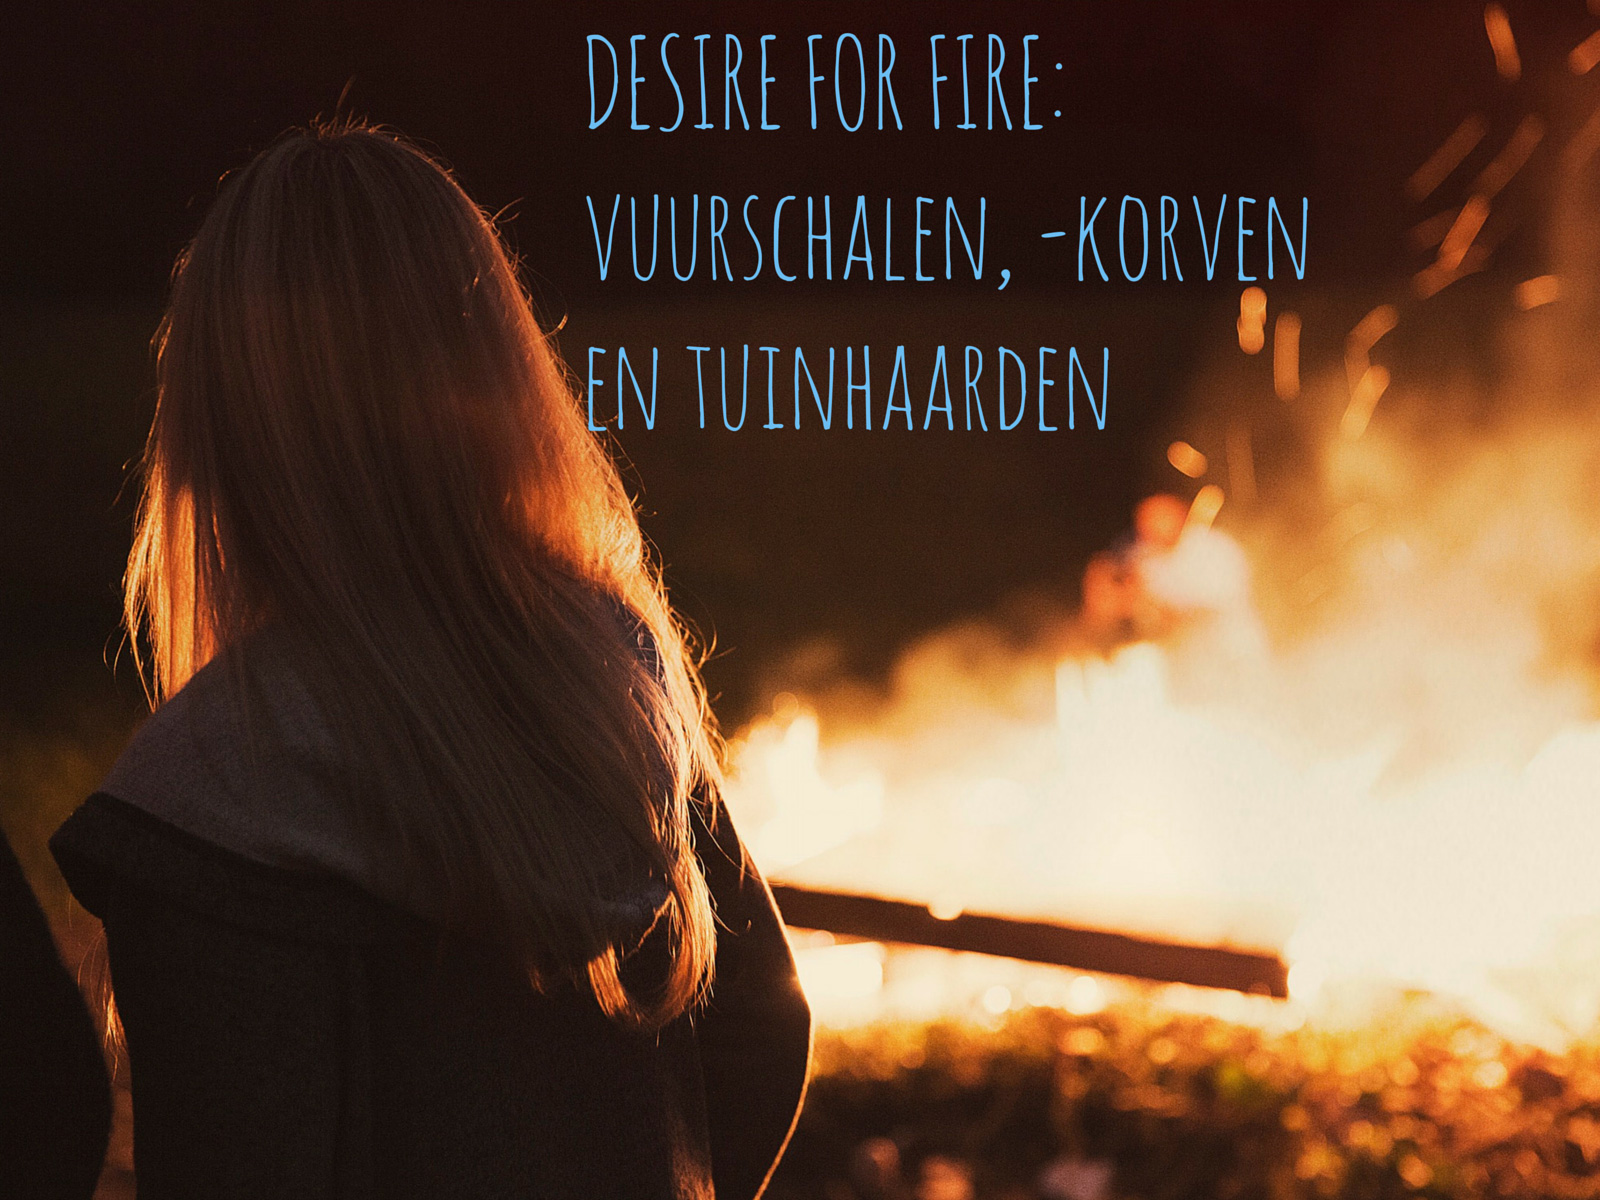 Desire for fire: verschillende vurige vuurschalen met een hoge X-factor